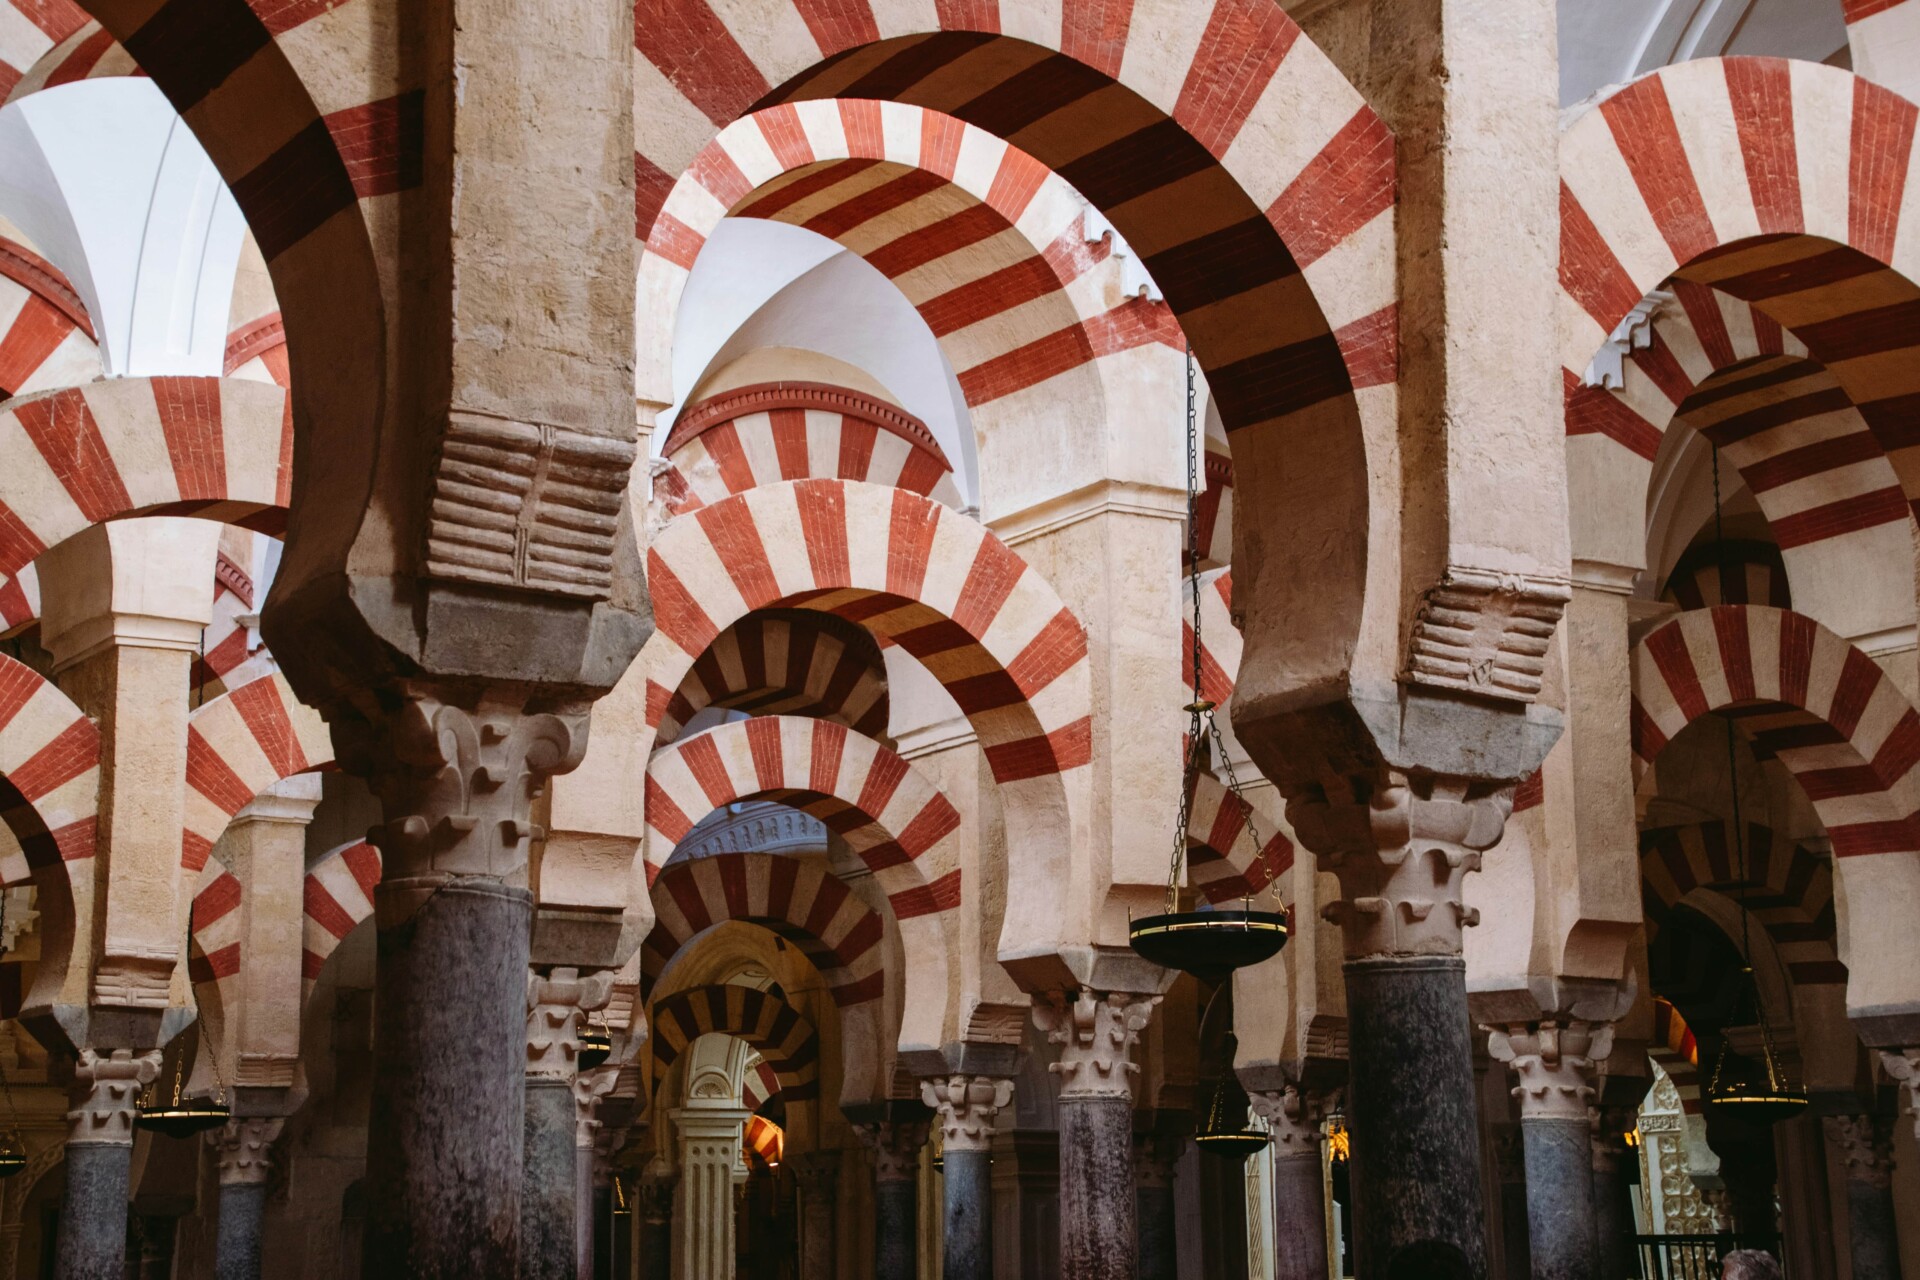 The striped brick arches of the Mezquita in Córdoba